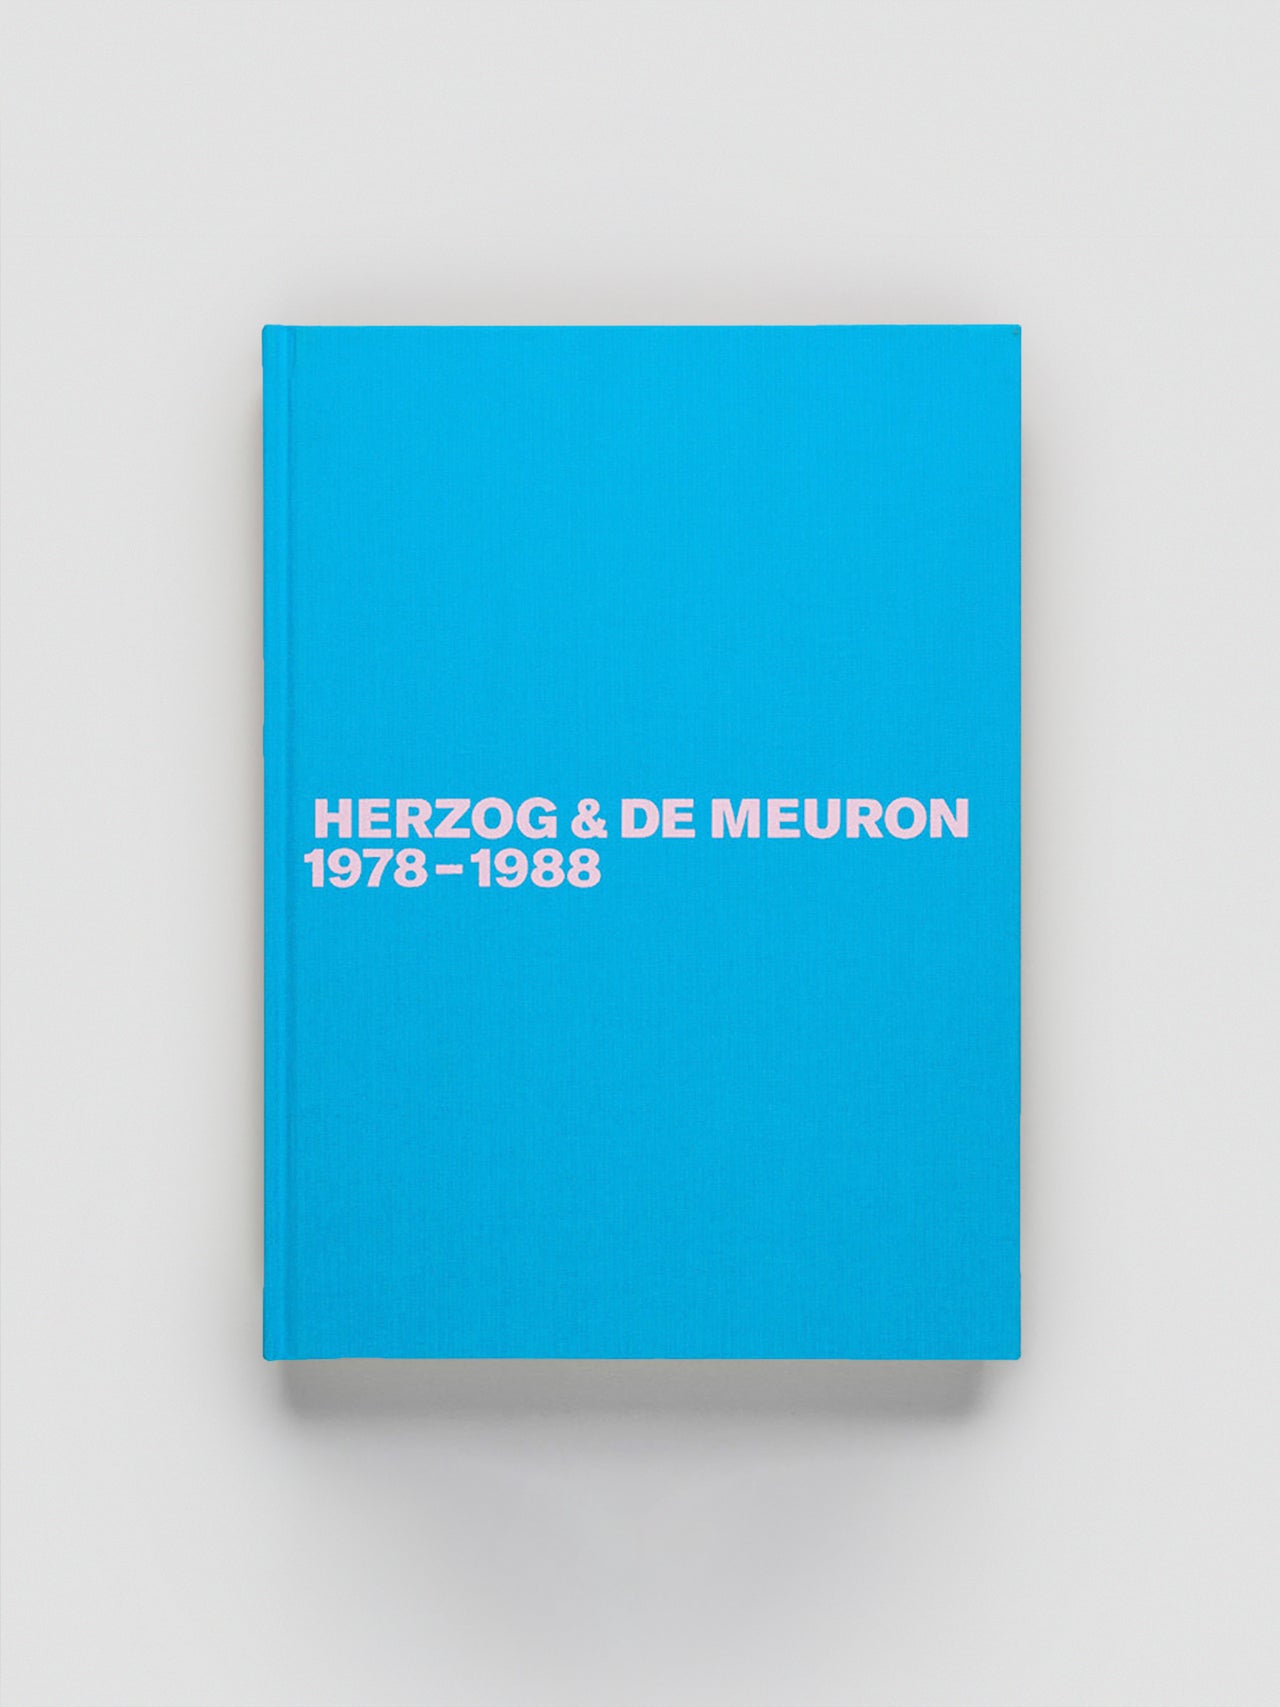 Herzog & de Meuron 1978-1988 Volume 1